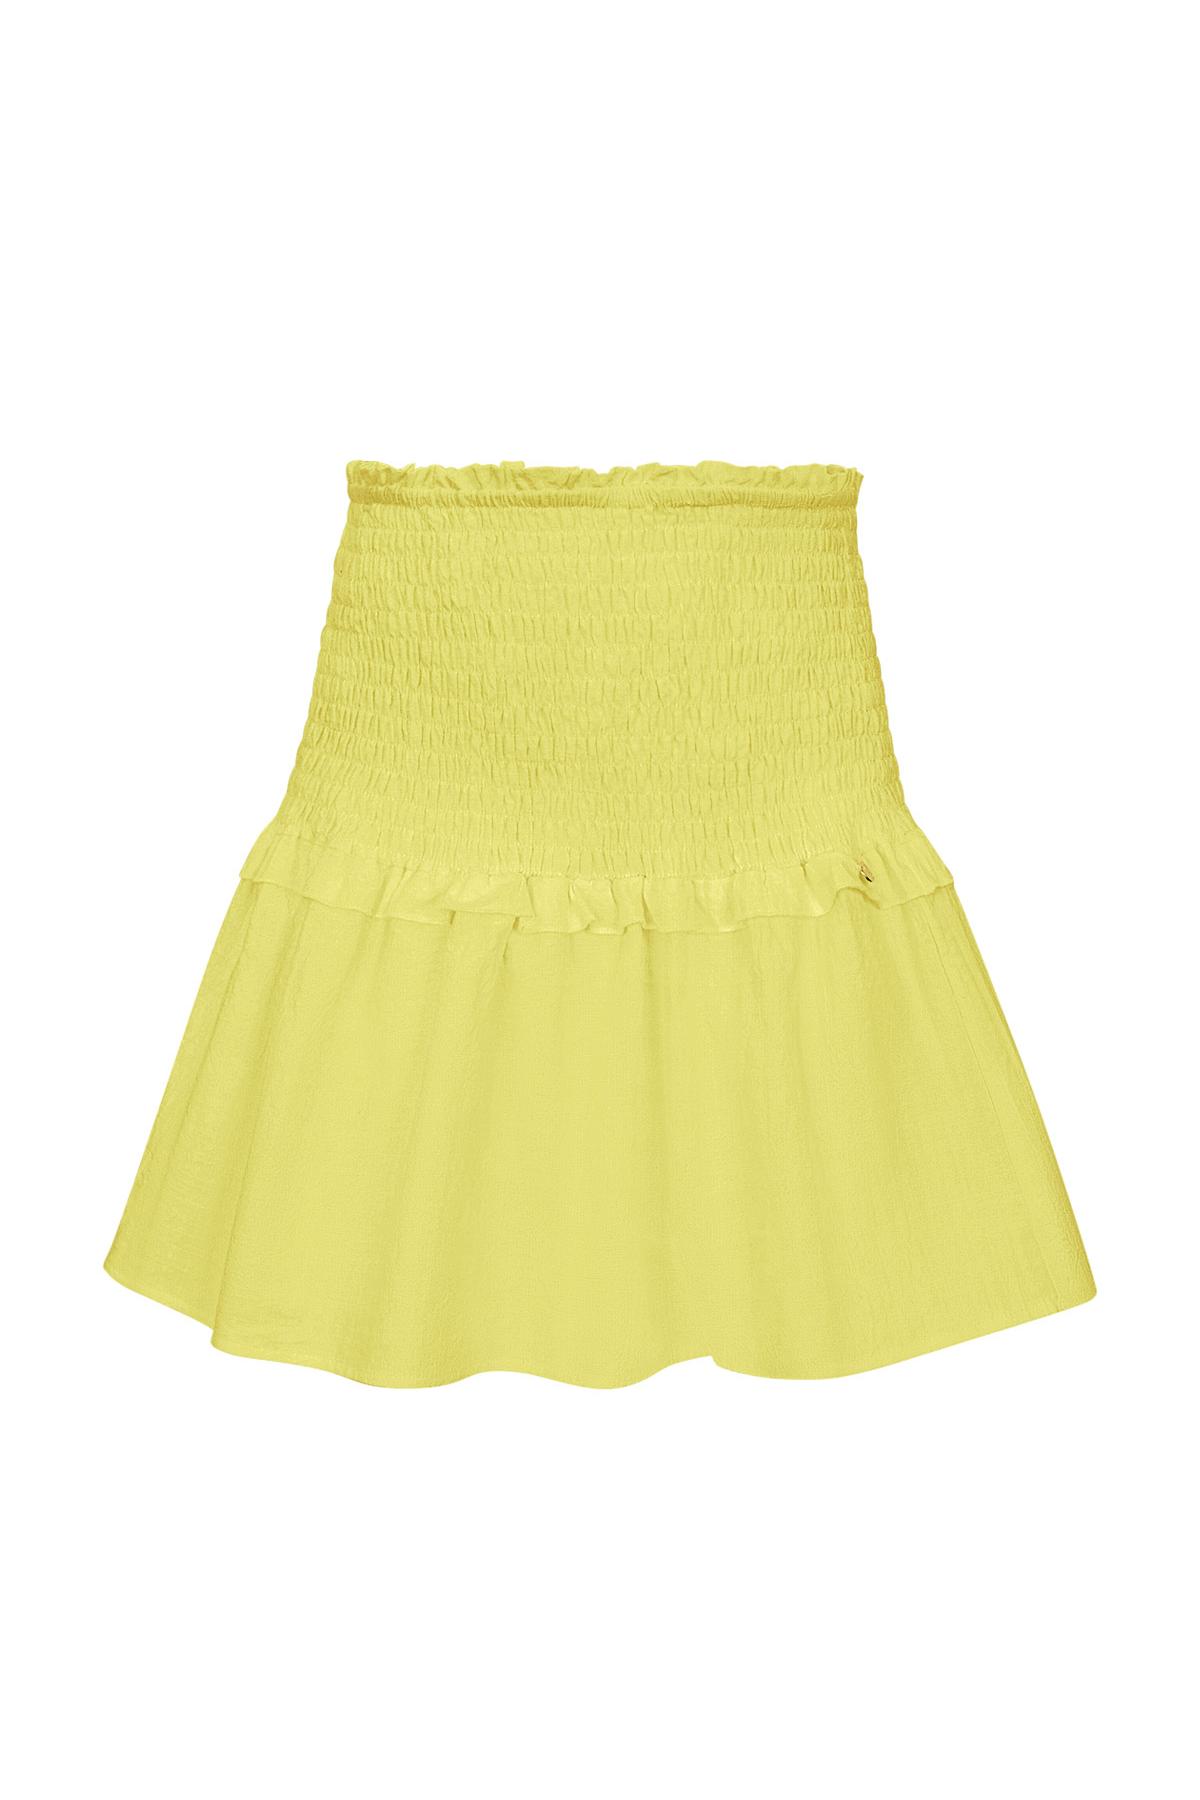 Skirt smock detail - yellow M 